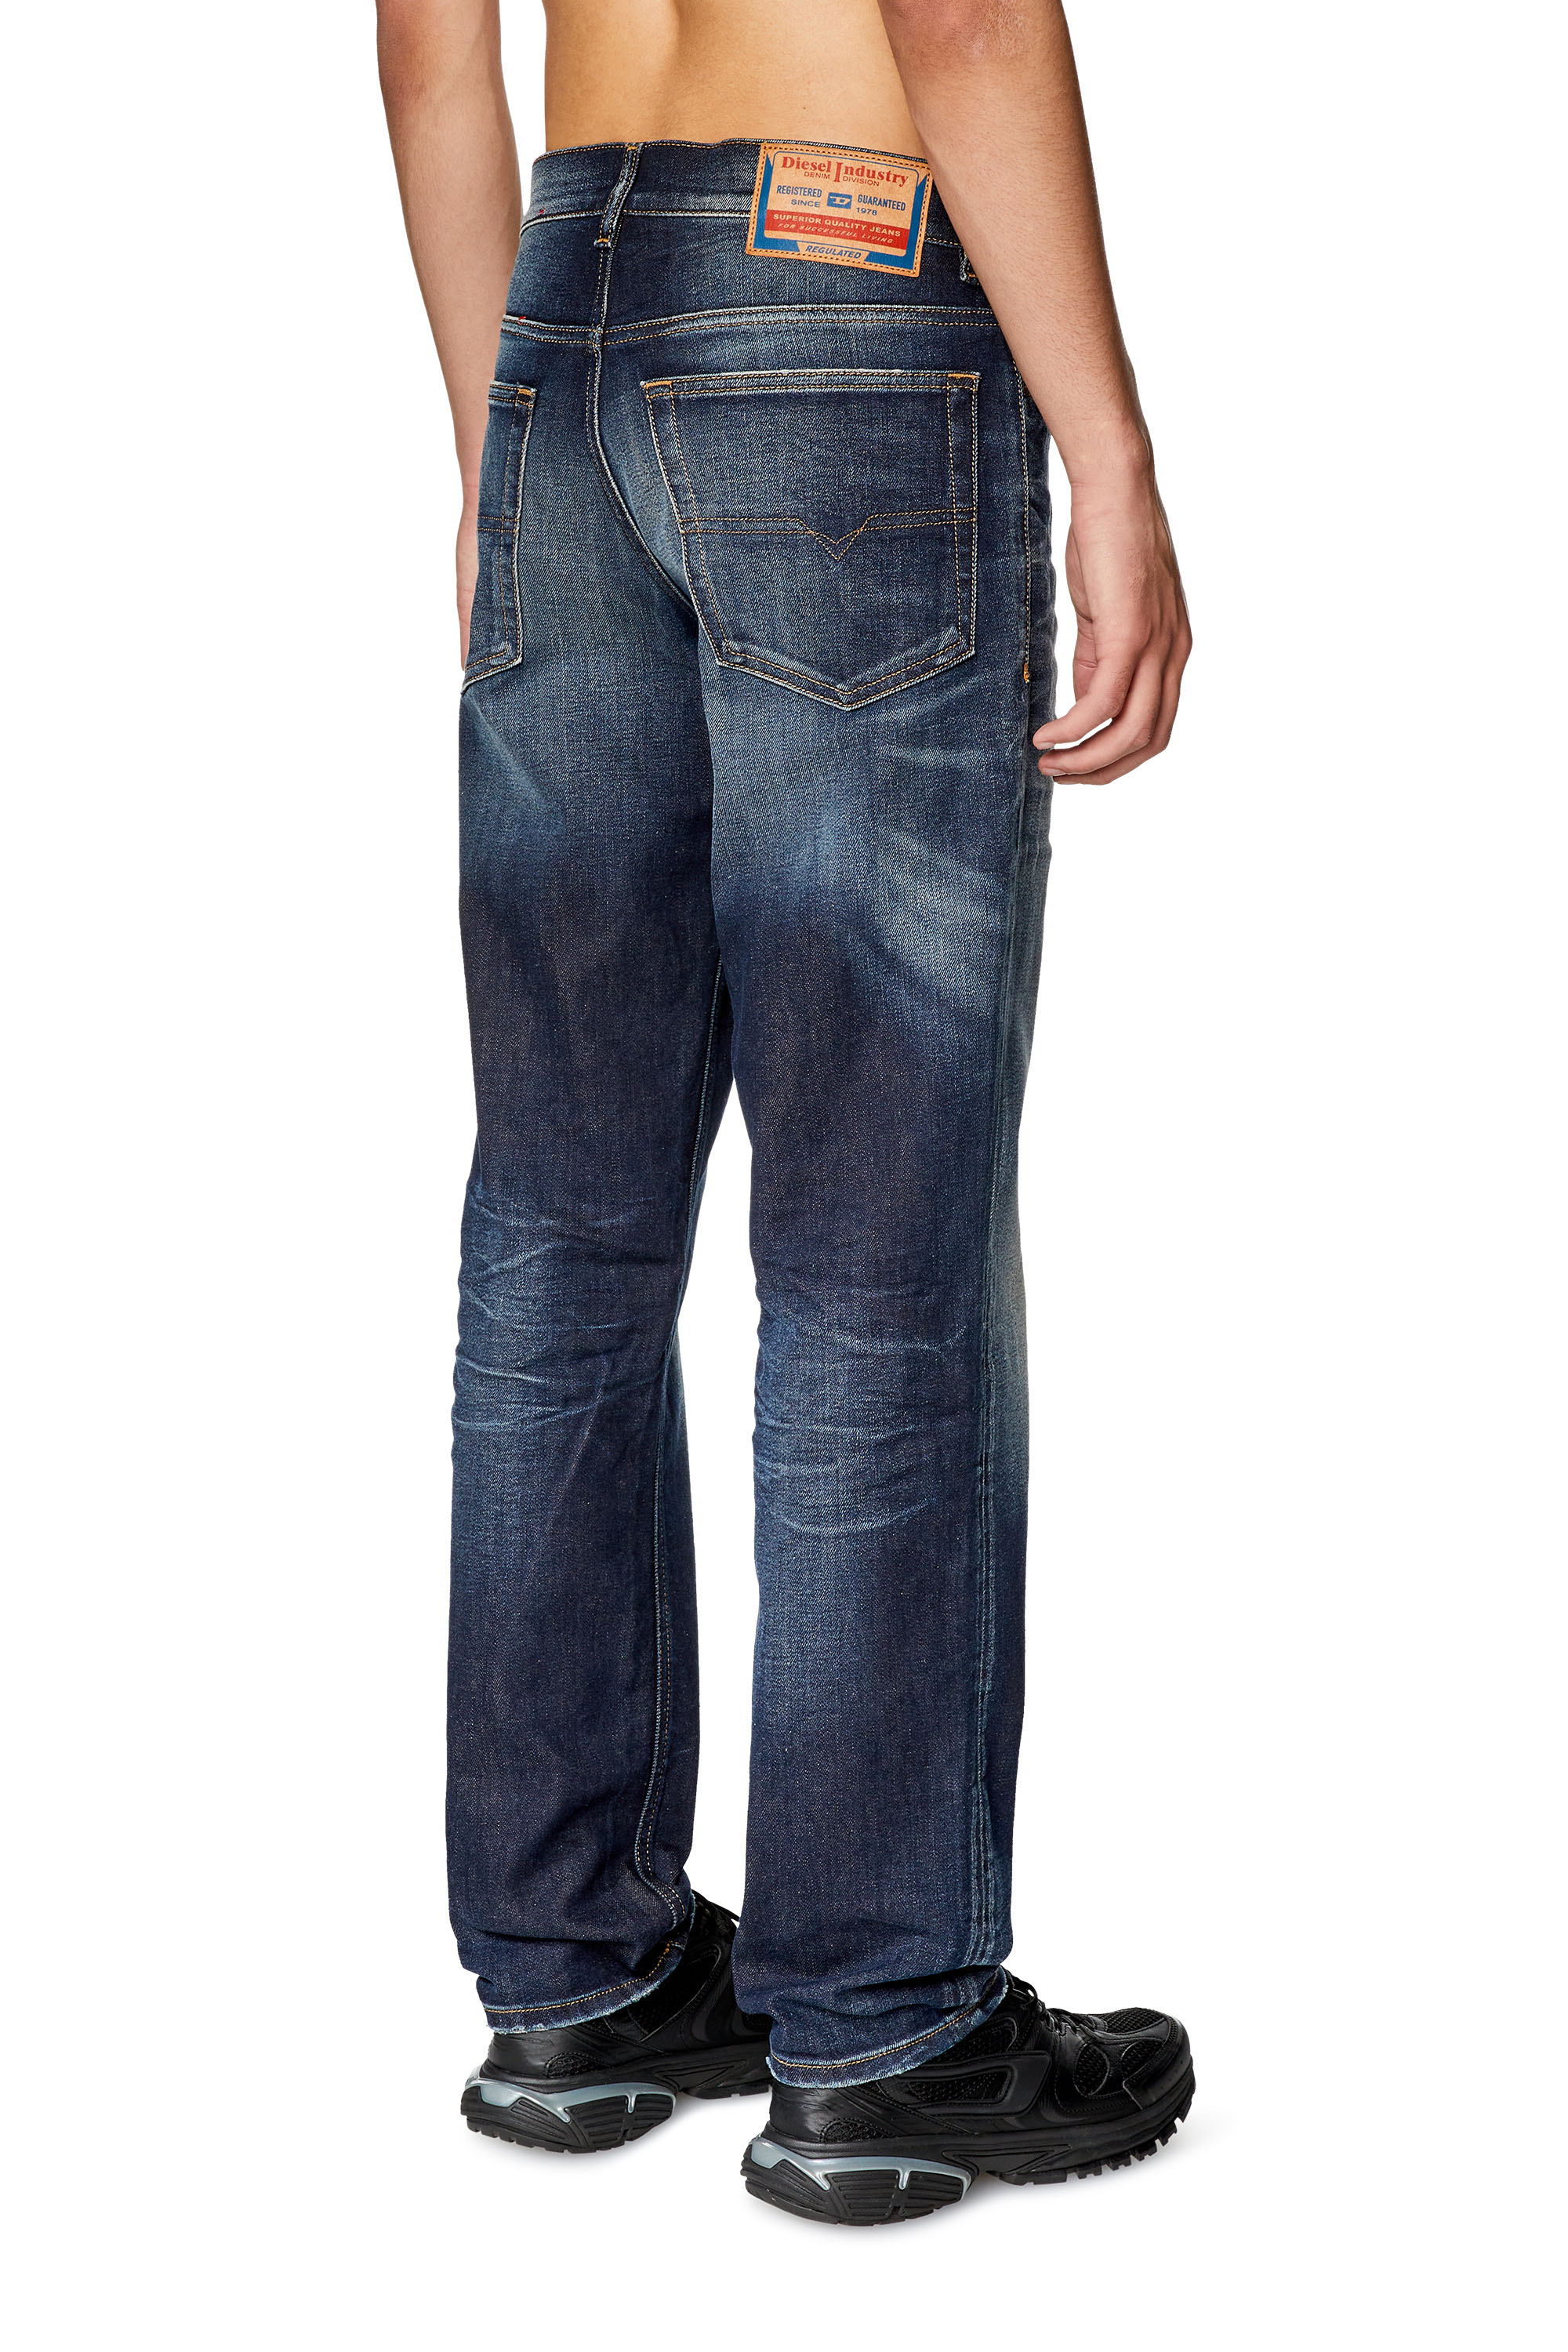 Men's Jeans: Skinny, Slim, Bootcut, Tapered, Straight Diesel®